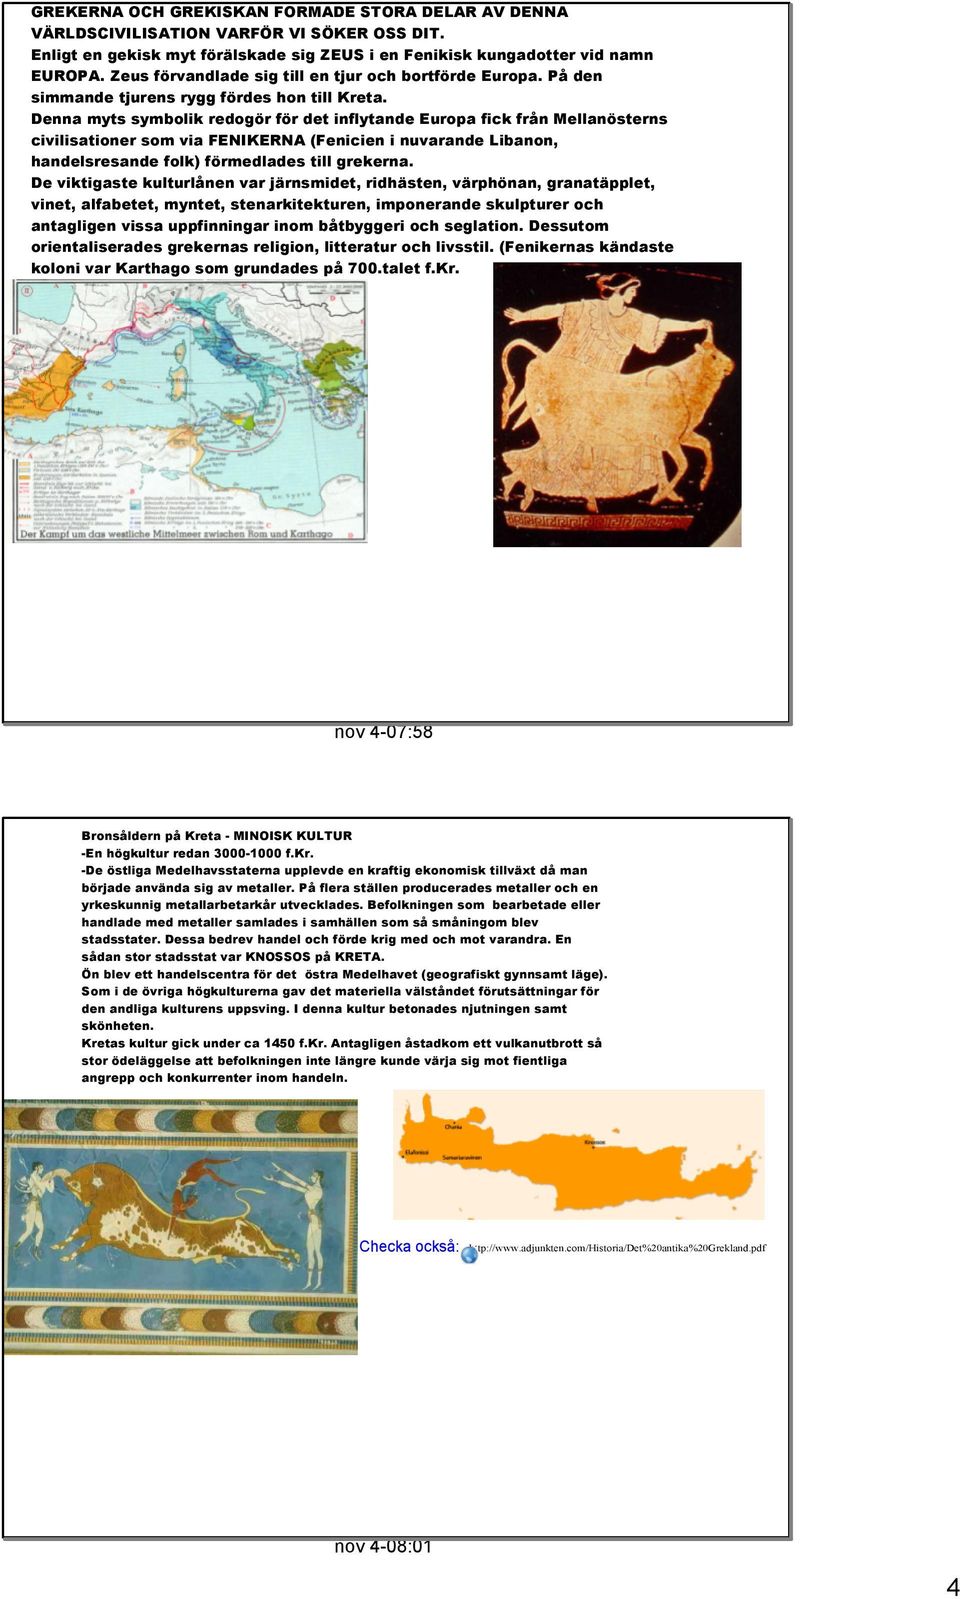 Denna myts symbolik redogör för det inflytande Europa fick från Mellanösterns civilisationer som via FENIKERNA (Fenicien i nuvarande Libanon, handelsresande folk) förmedlades till grekerna.